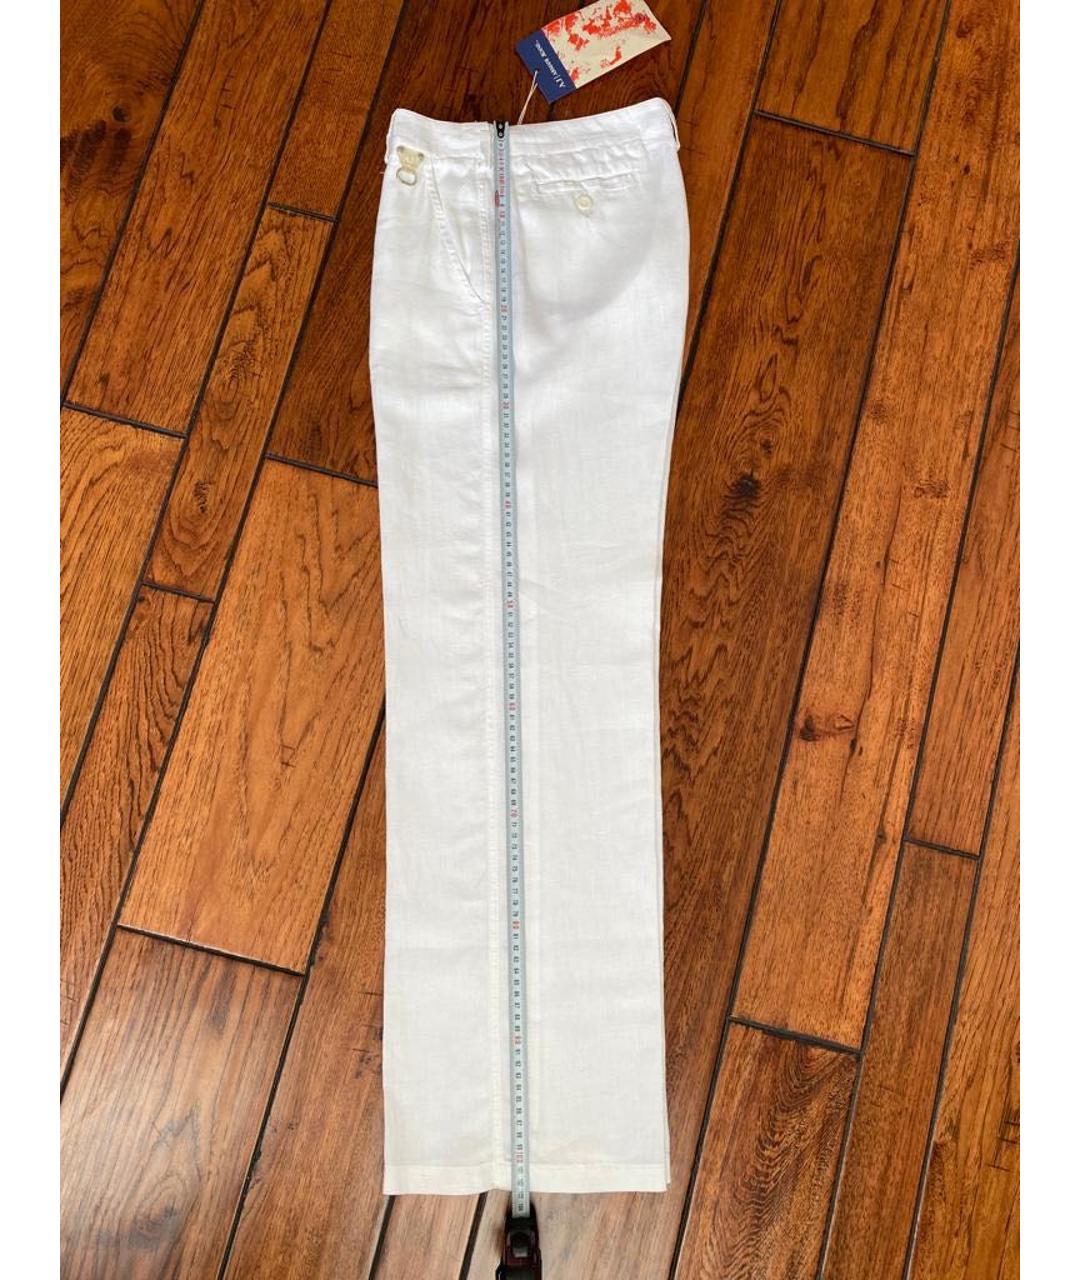 ARMANI JEANS Белые льняные брюки широкие, фото 4